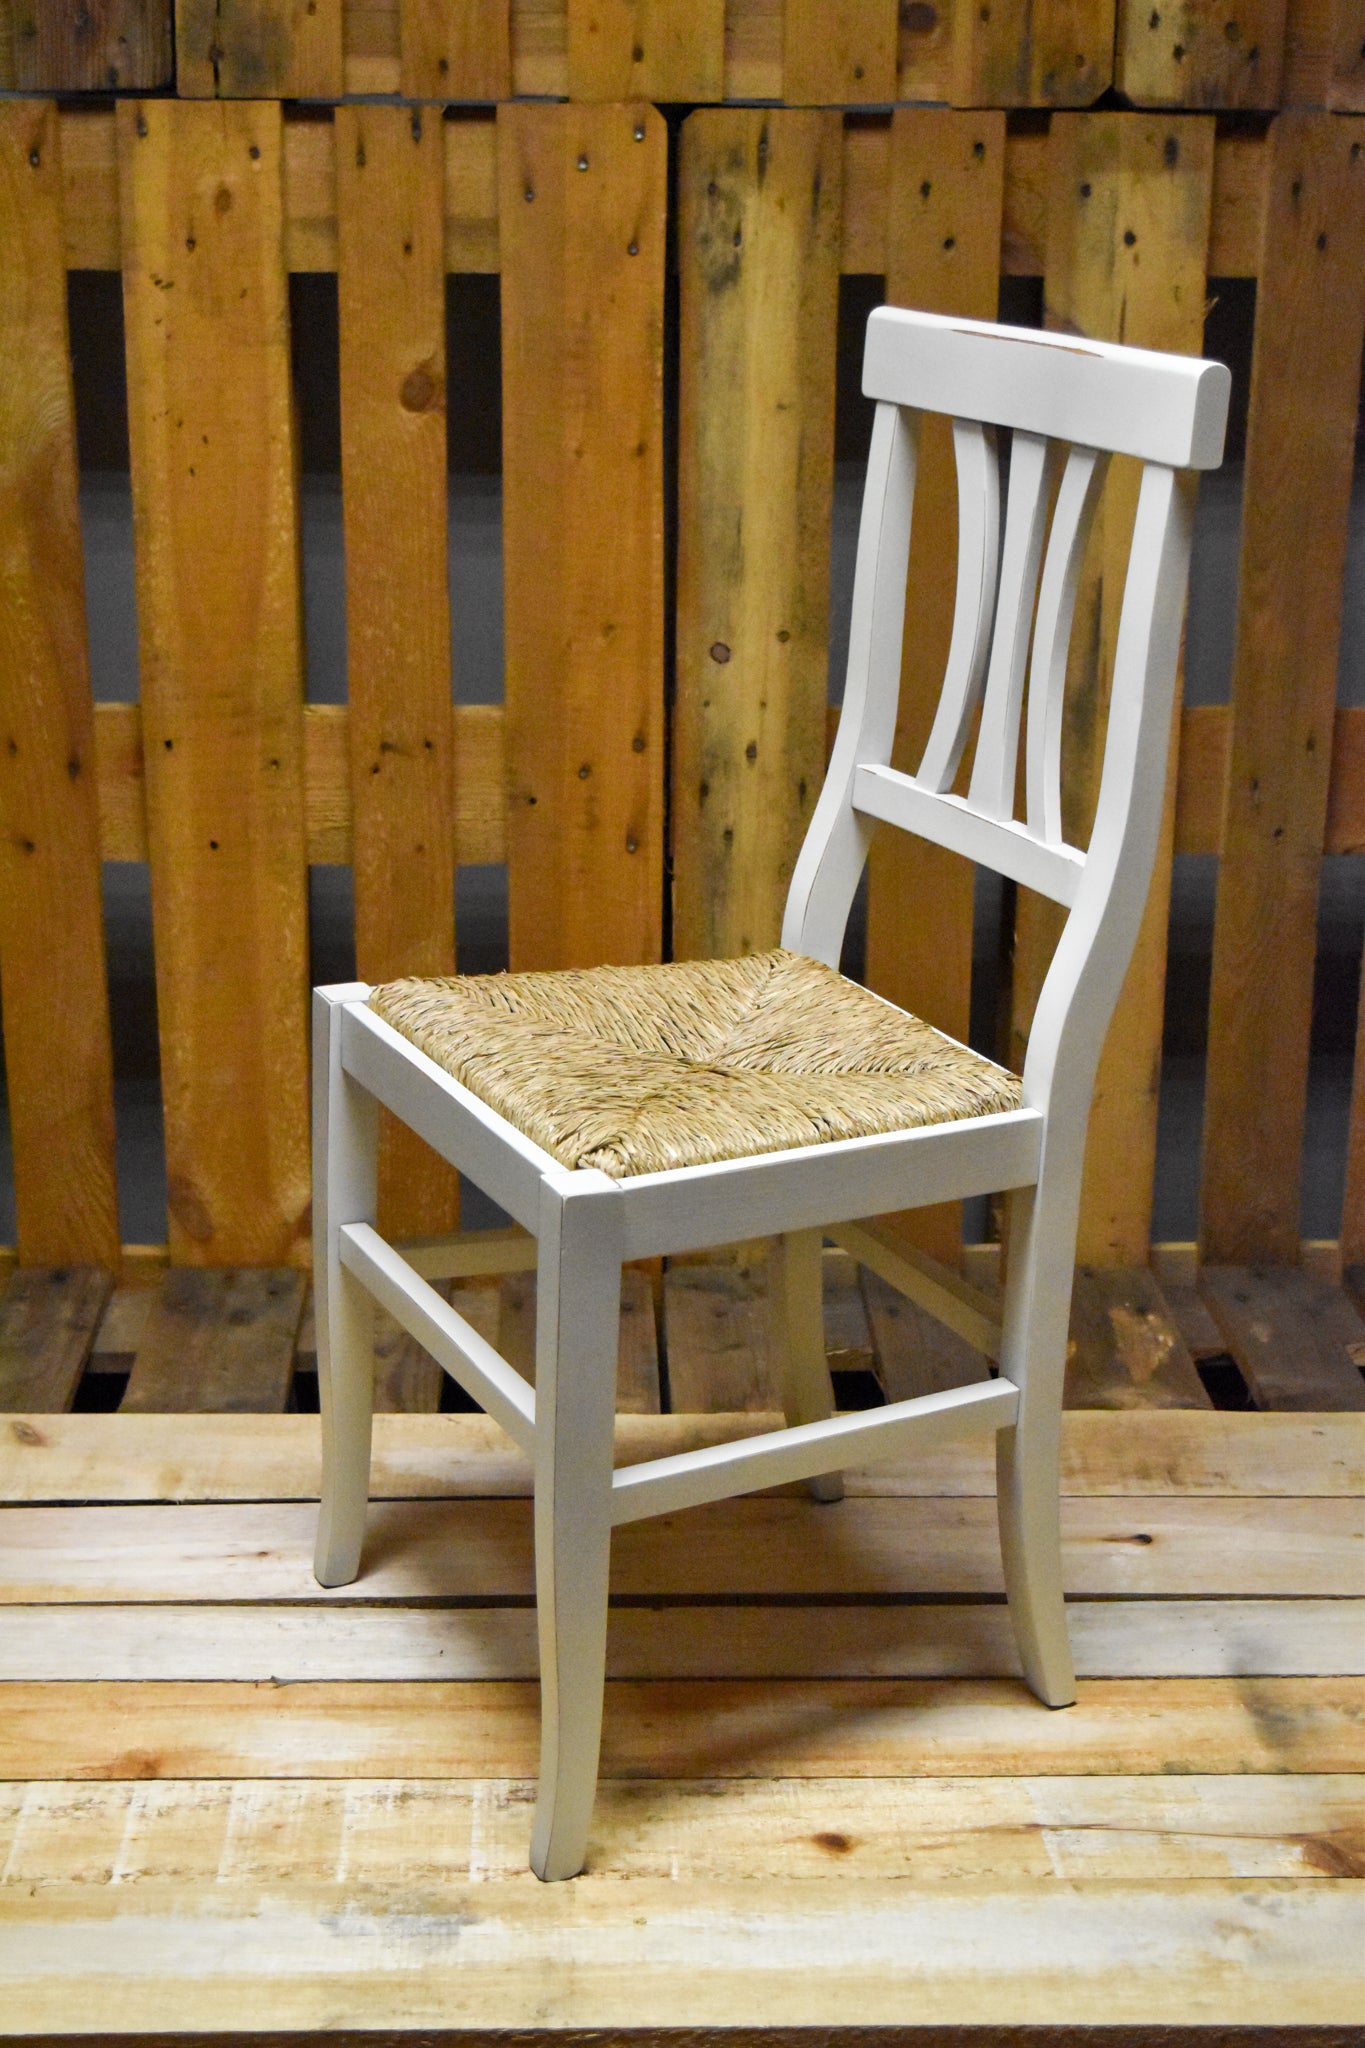 Stock sedie outlet modello 16/11 colore bianco anticato seduta in paglia